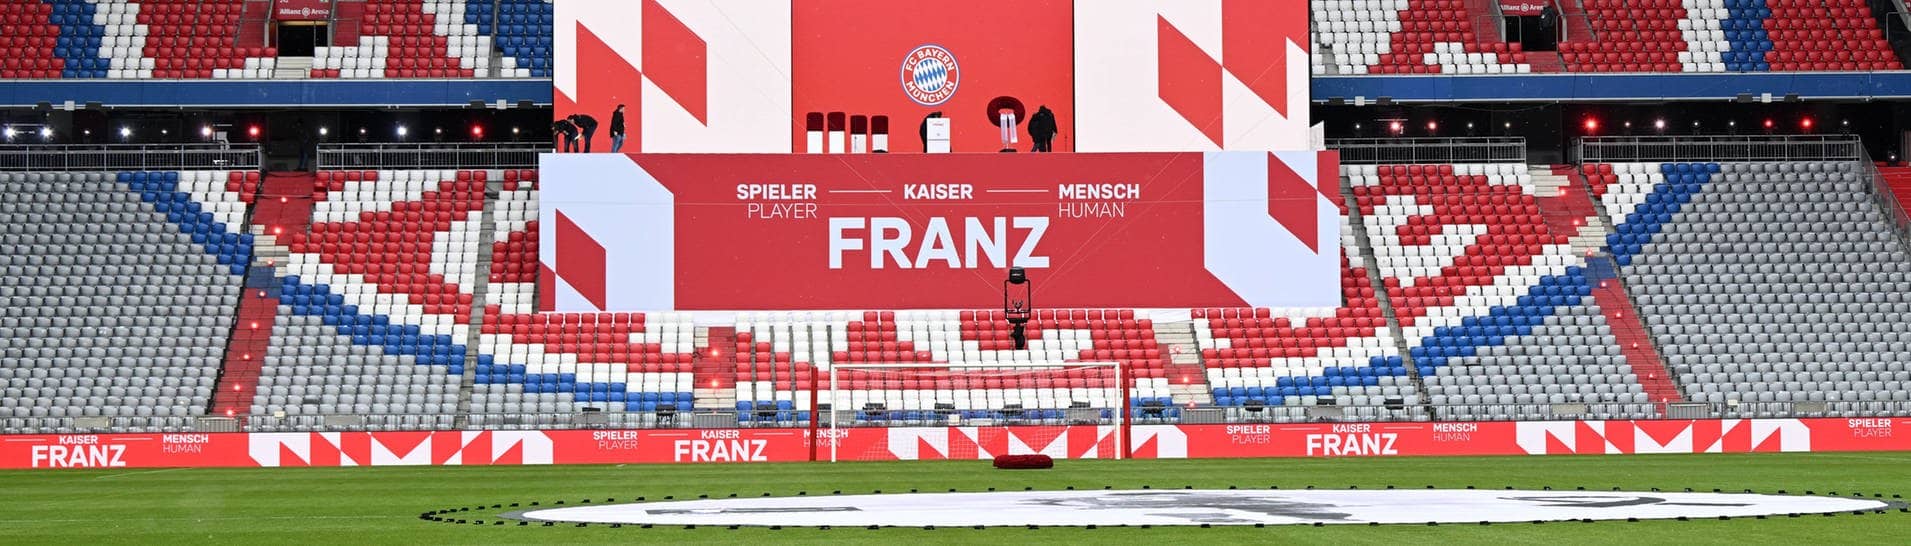 Gedenkfeier des FC Bayern München für Franz Beckenbauer in der Allianz Arena. 